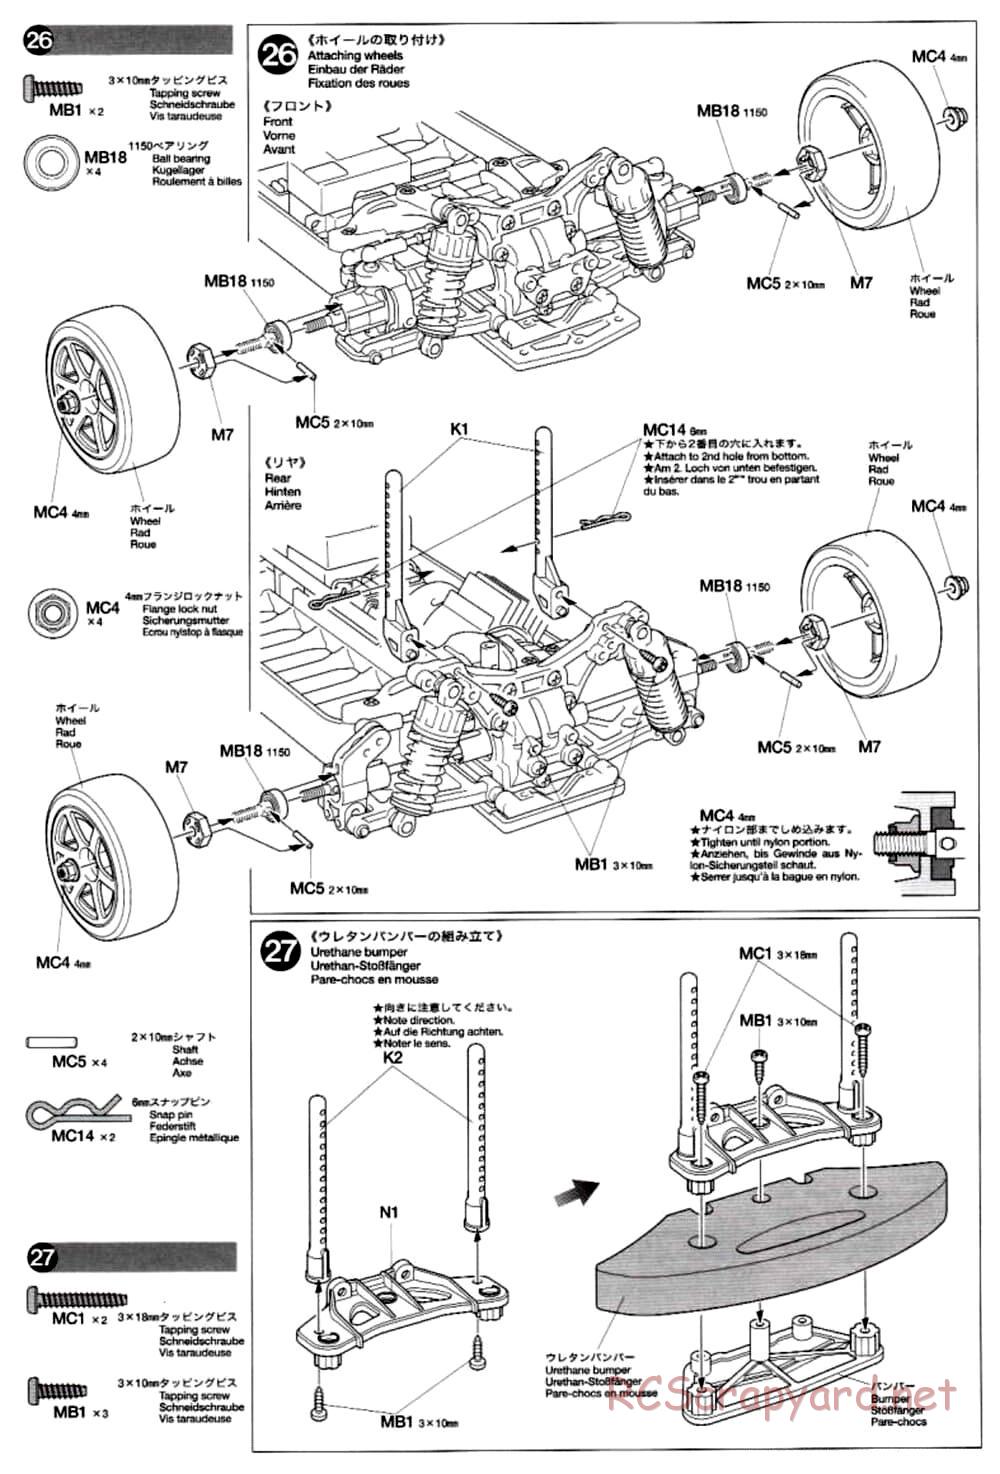 Tamiya - TB-02 Chassis - Manual - Page 16